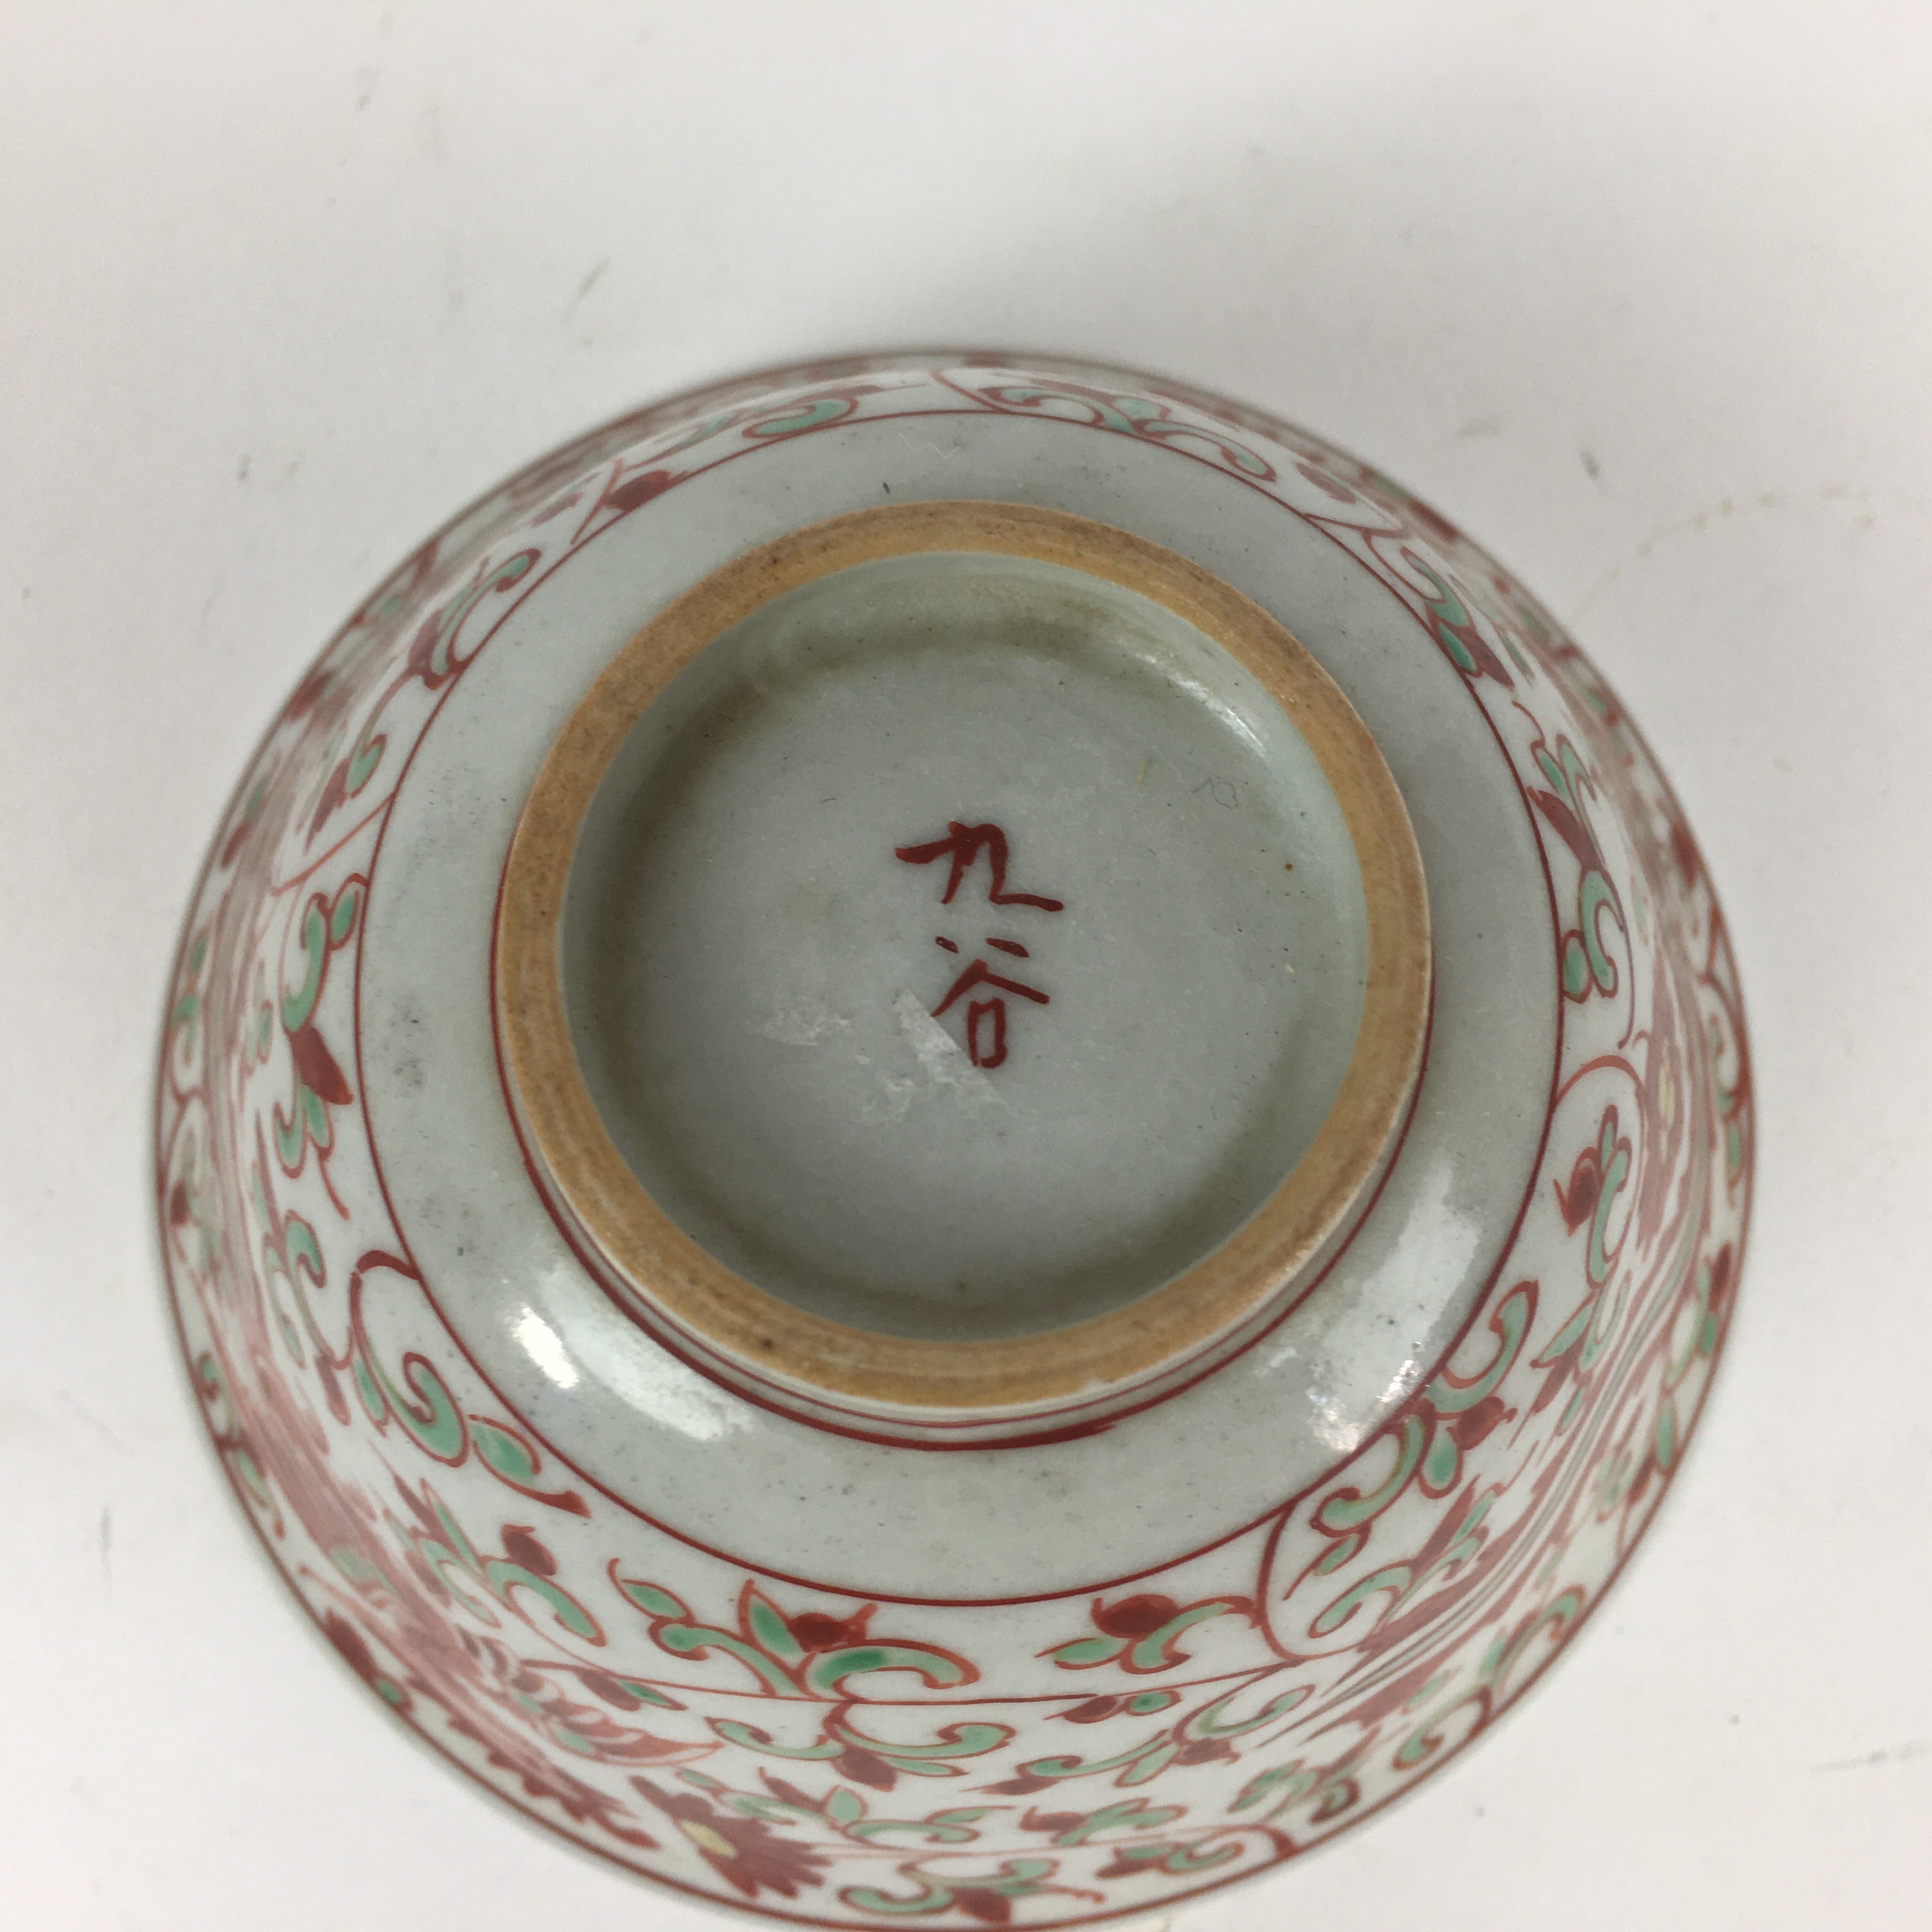 Japanese Kutani ware Porcelain Teacup Yunomi Vtg White Red Phoenix Sencha TC290